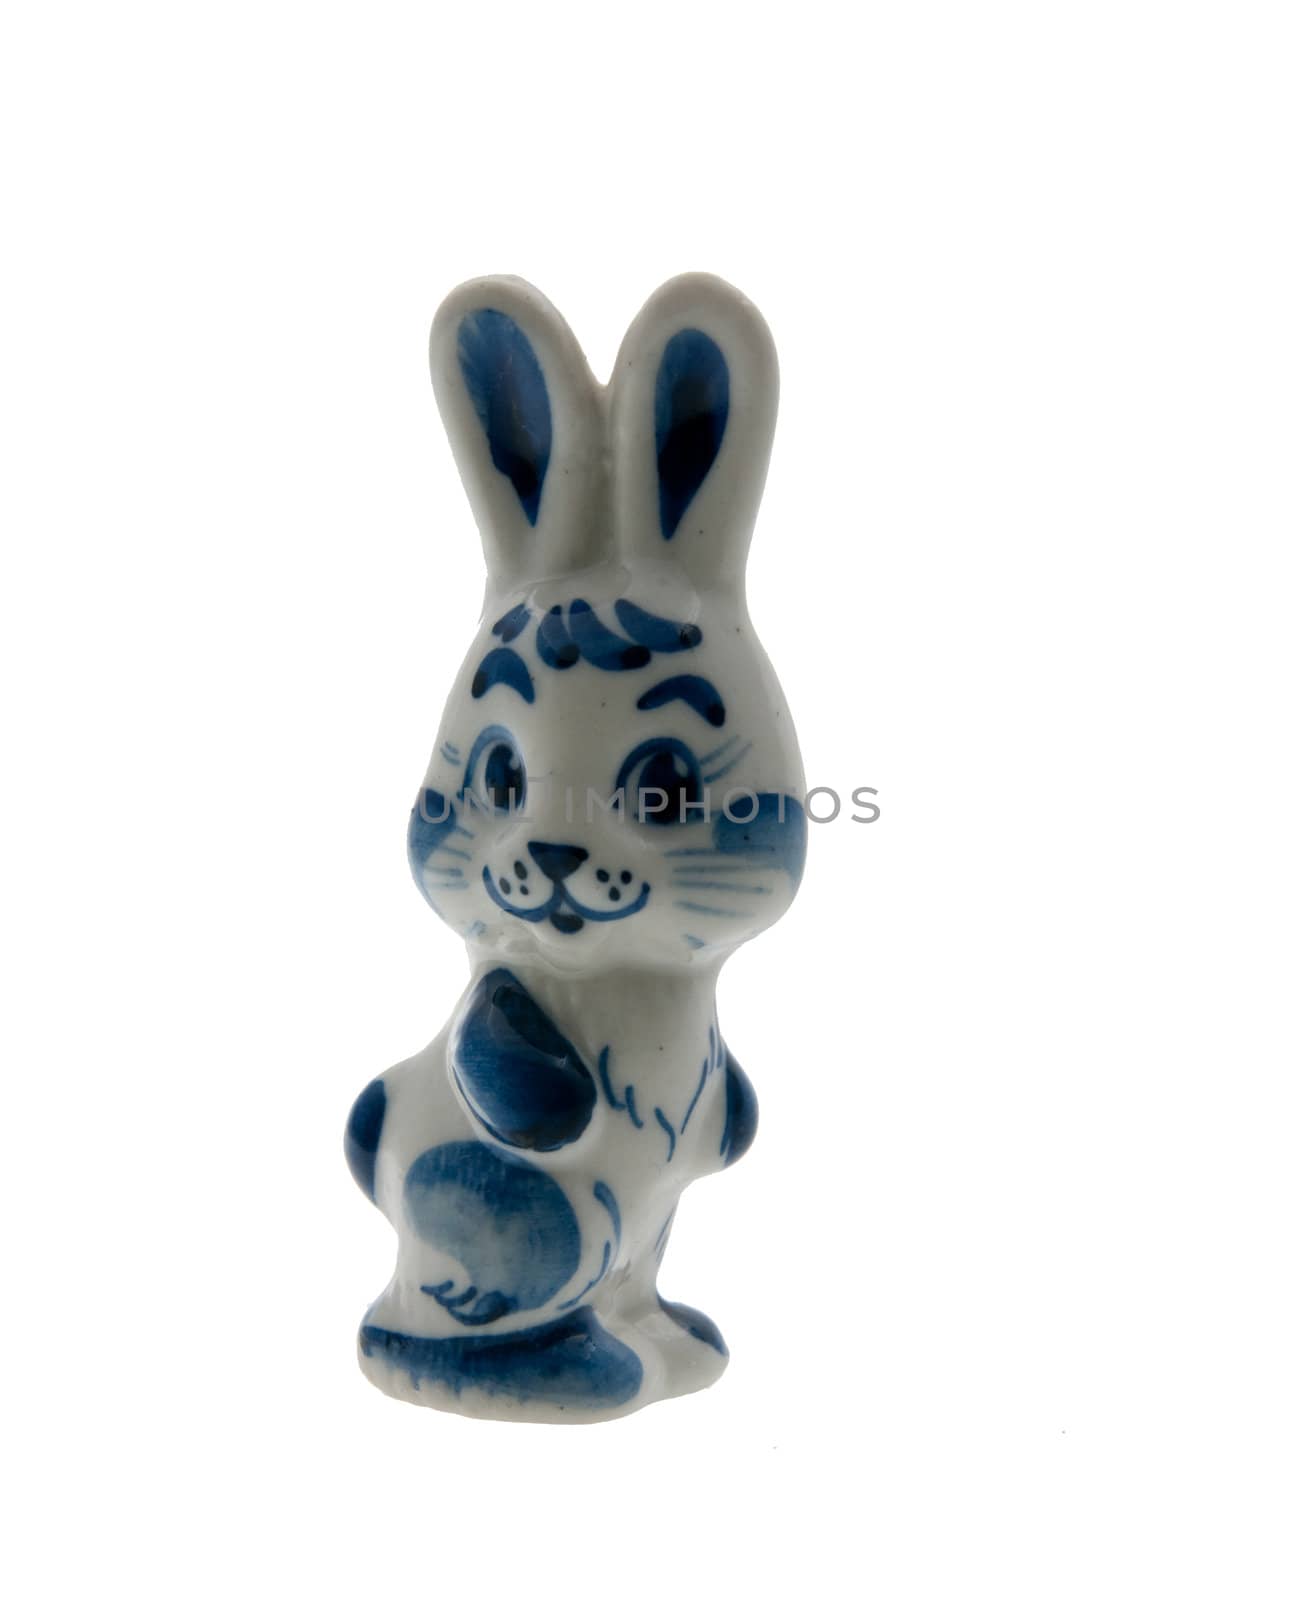 blu white rabbit by dyvan